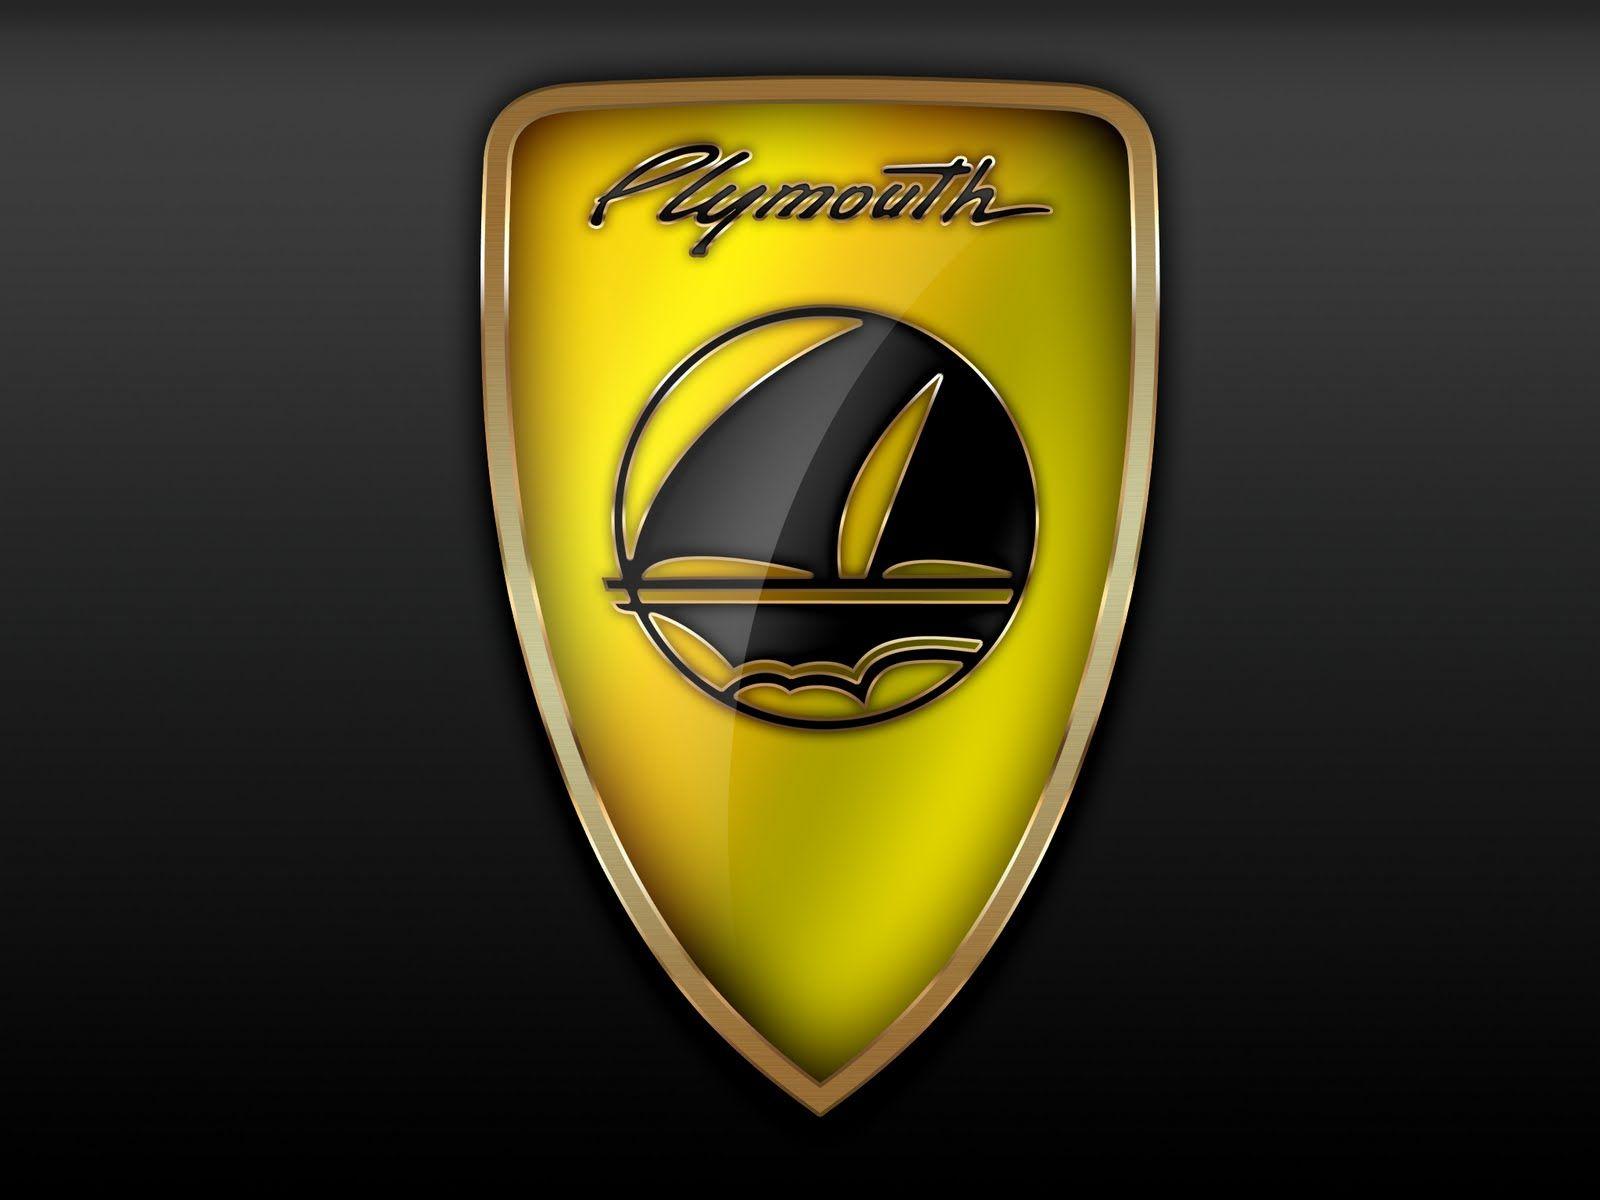 Plymouth Car Logo - Plymouth Car Logo